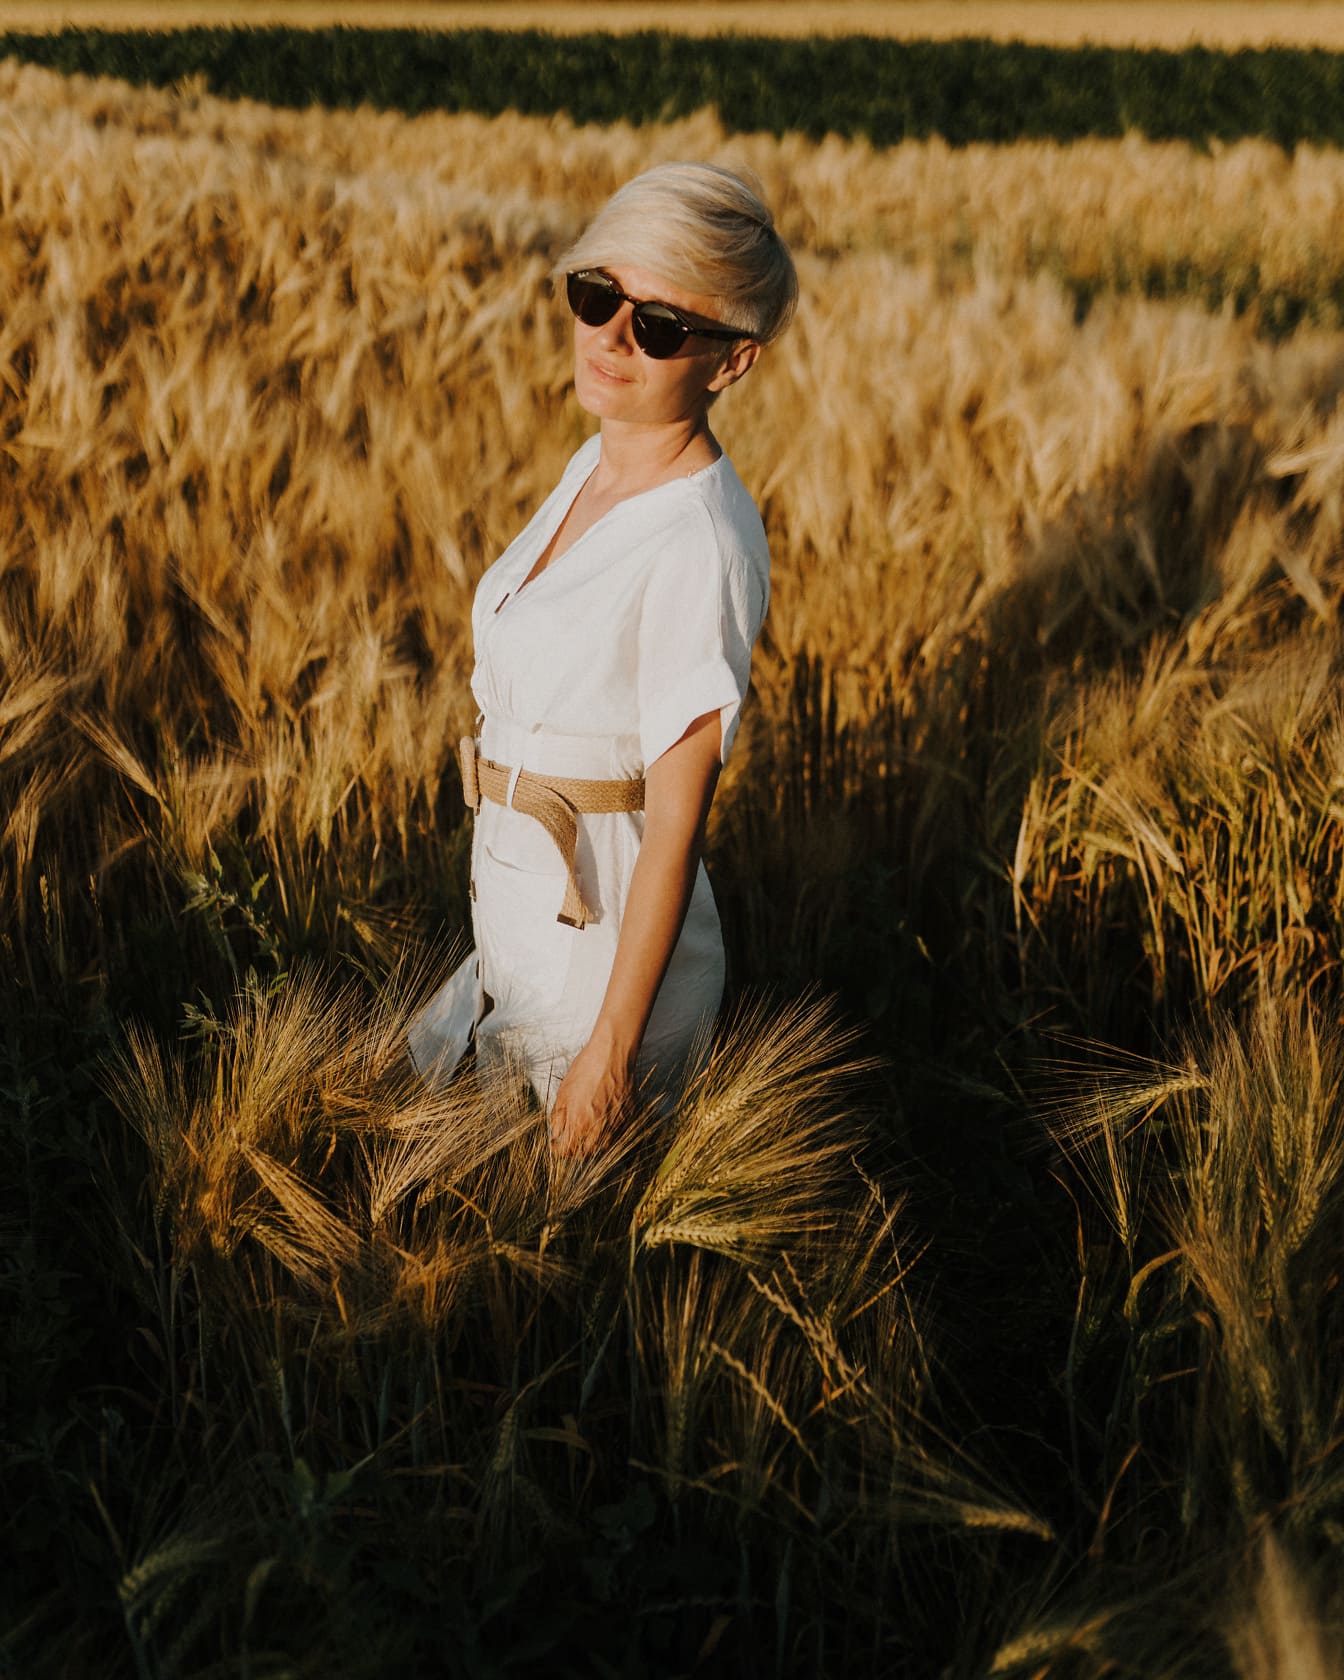 Lijepa žena sa sunčanim naočalama i bijelom haljinom u polju pšenice ljeti